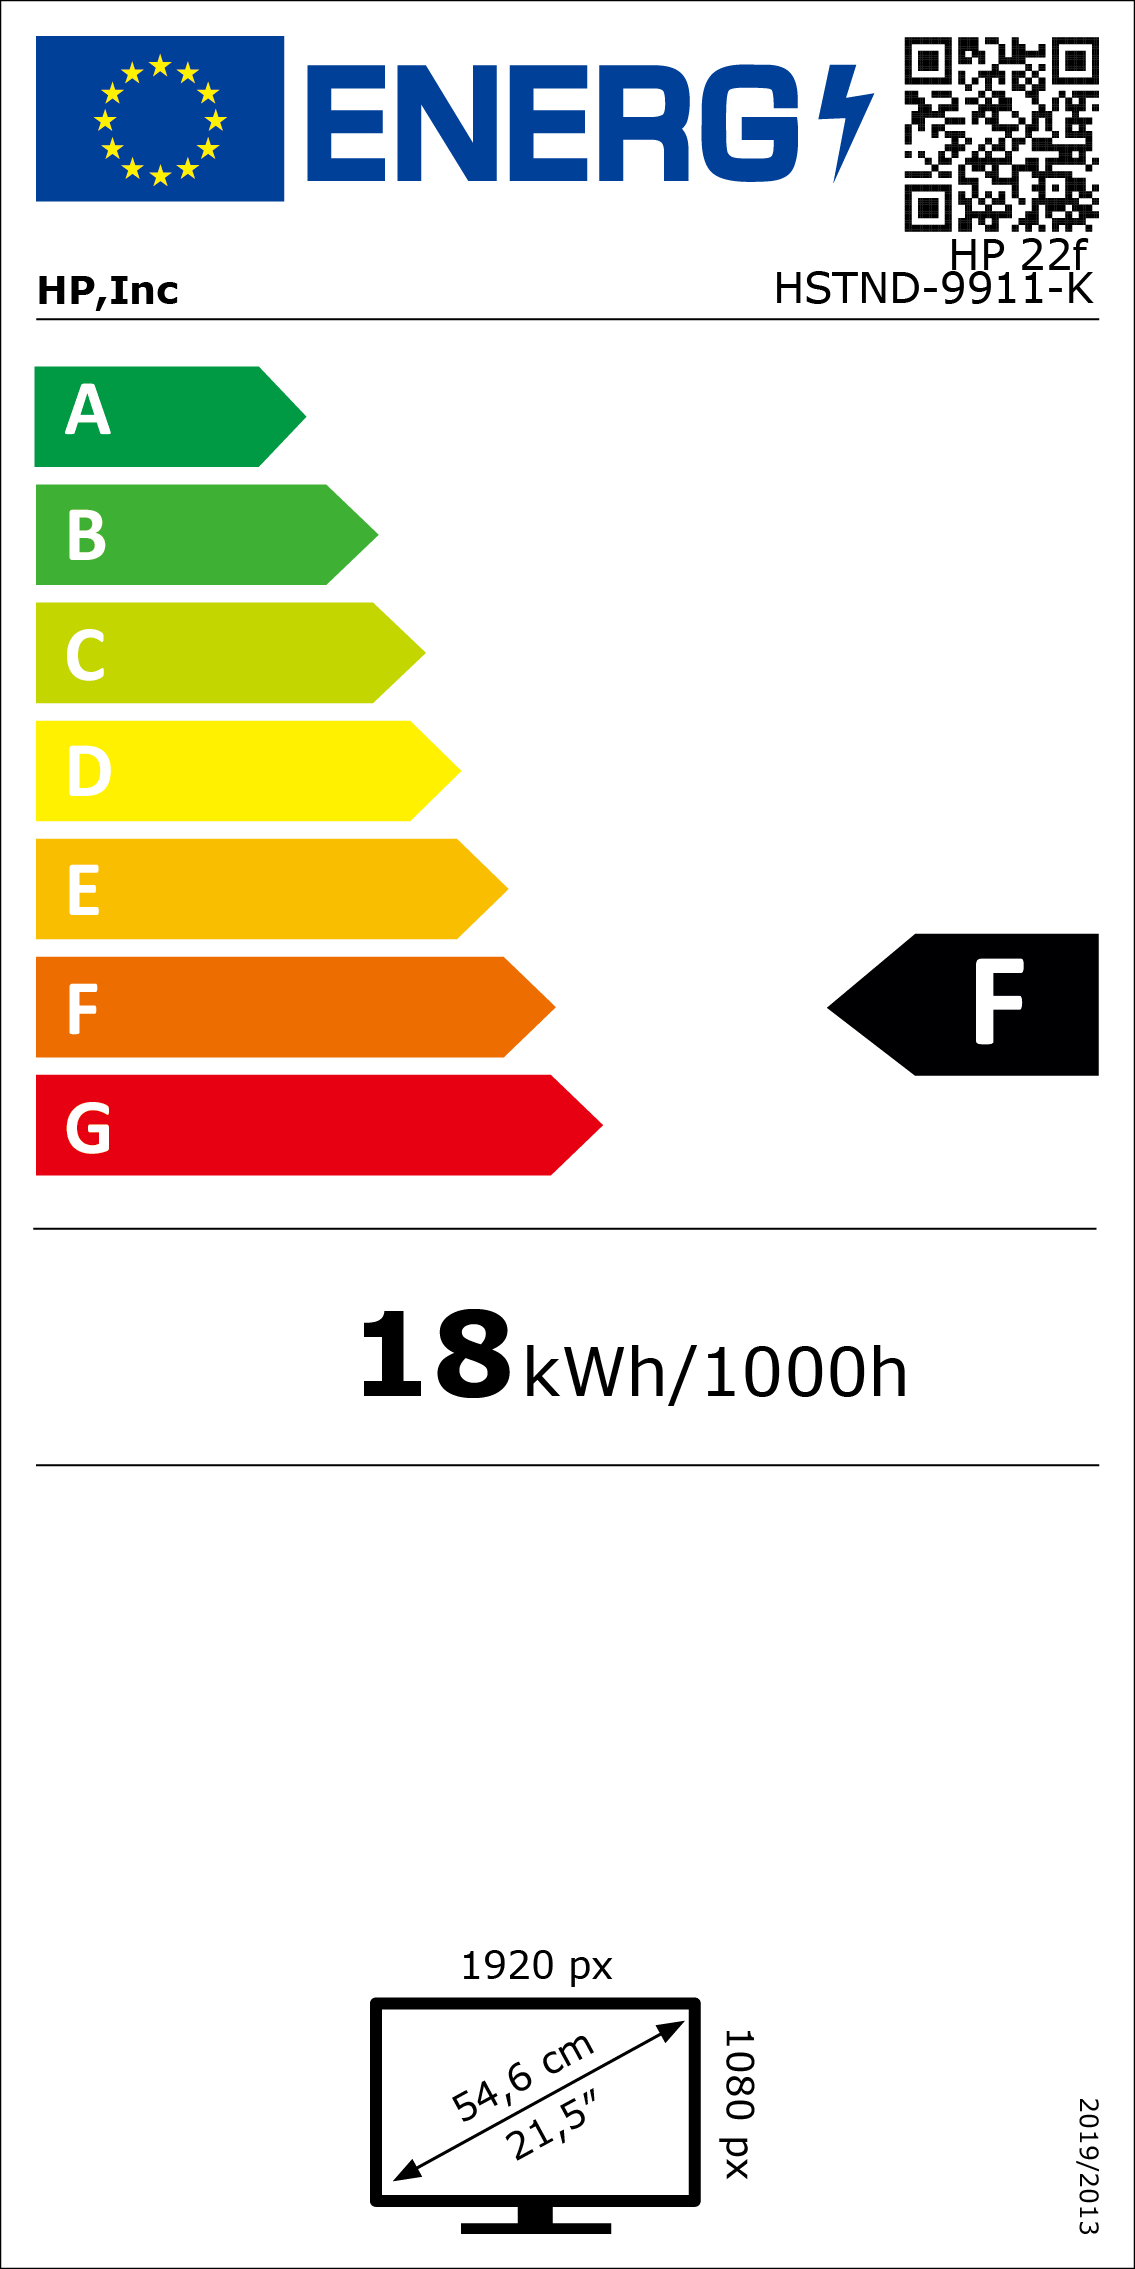 Energy label